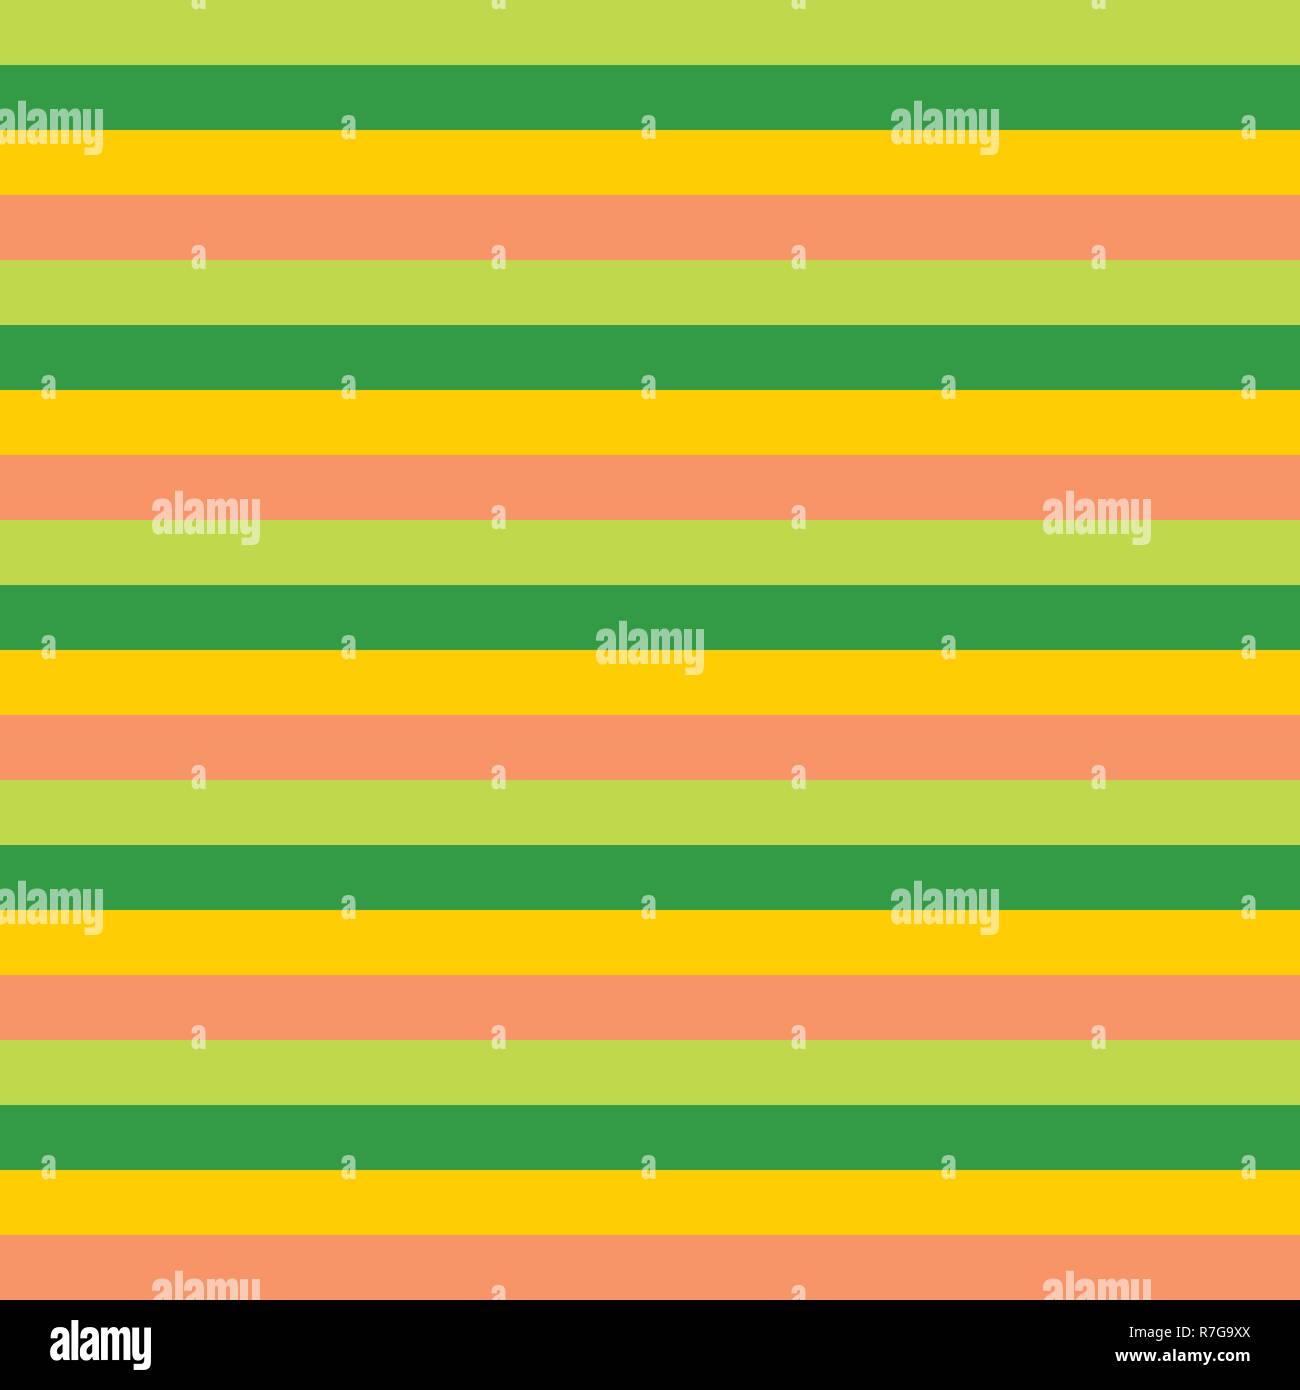 Gelb Grün Rosa horizontalen Streifen Muster. Horizontal gestreifte nahtlose Vektor Hintergrund. Toll für Esser, Feder, Stoff, Verpackung, Papier Projekte. Koordinate Muster für meine Ostern Sammlung. Stock Vektor